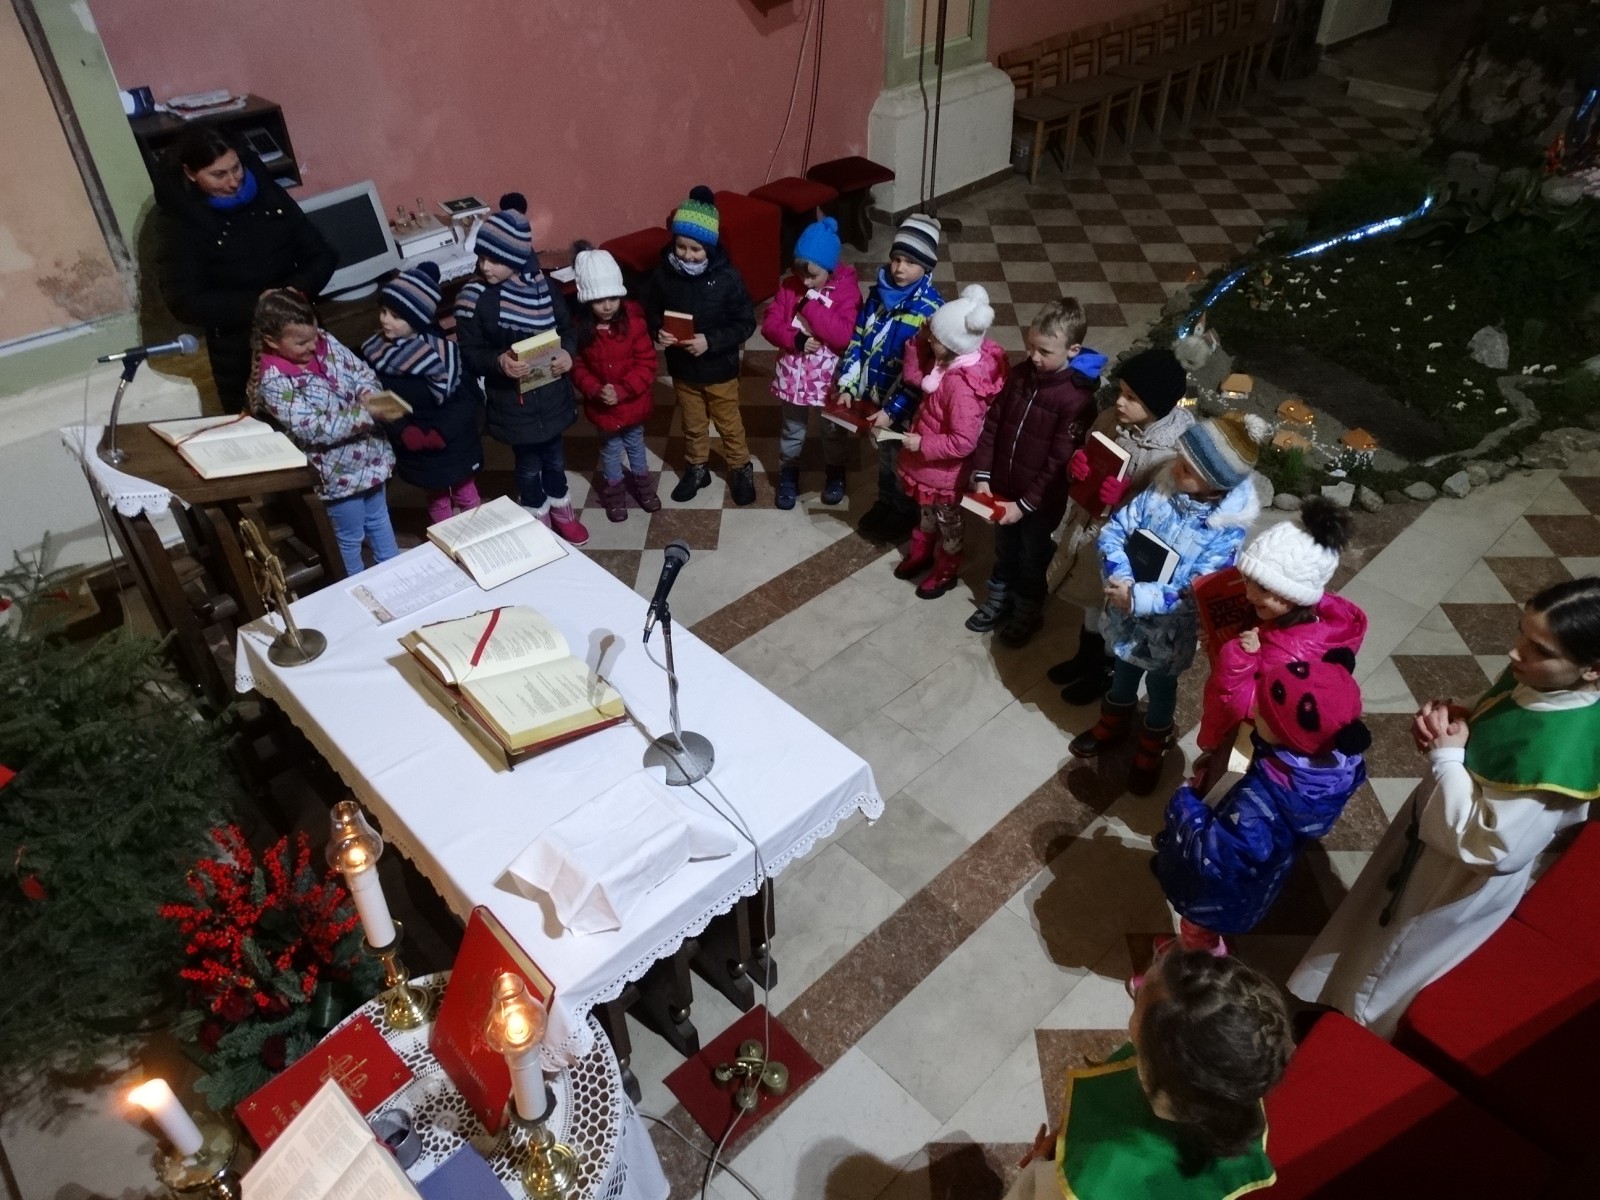 V župniji Dravograd slovesno počastili nedeljo Sv.pisma